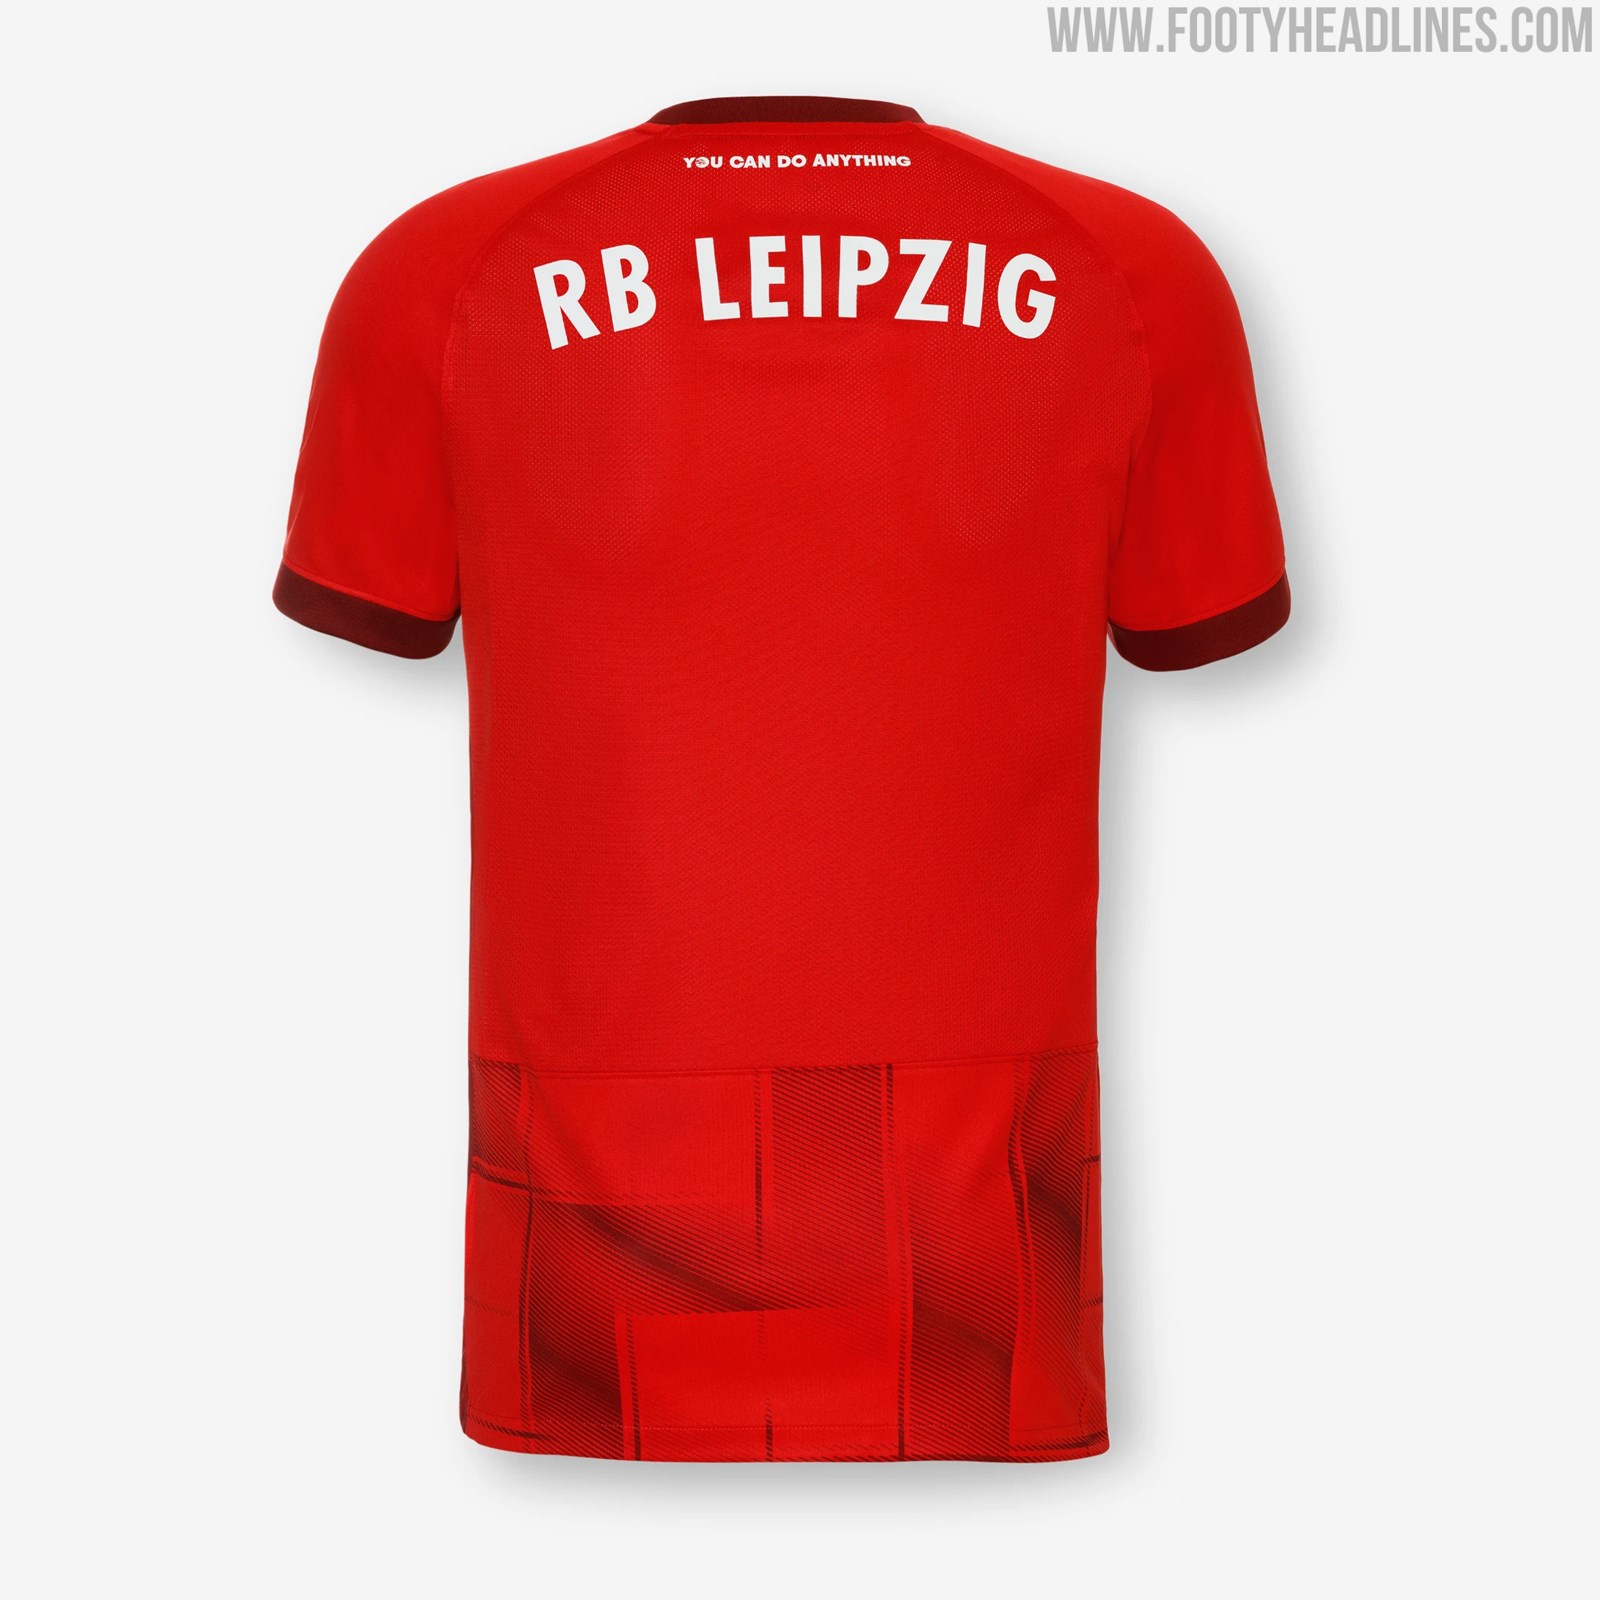 RB Leipzig 21-22 Third Kit Released - Footy Headlines